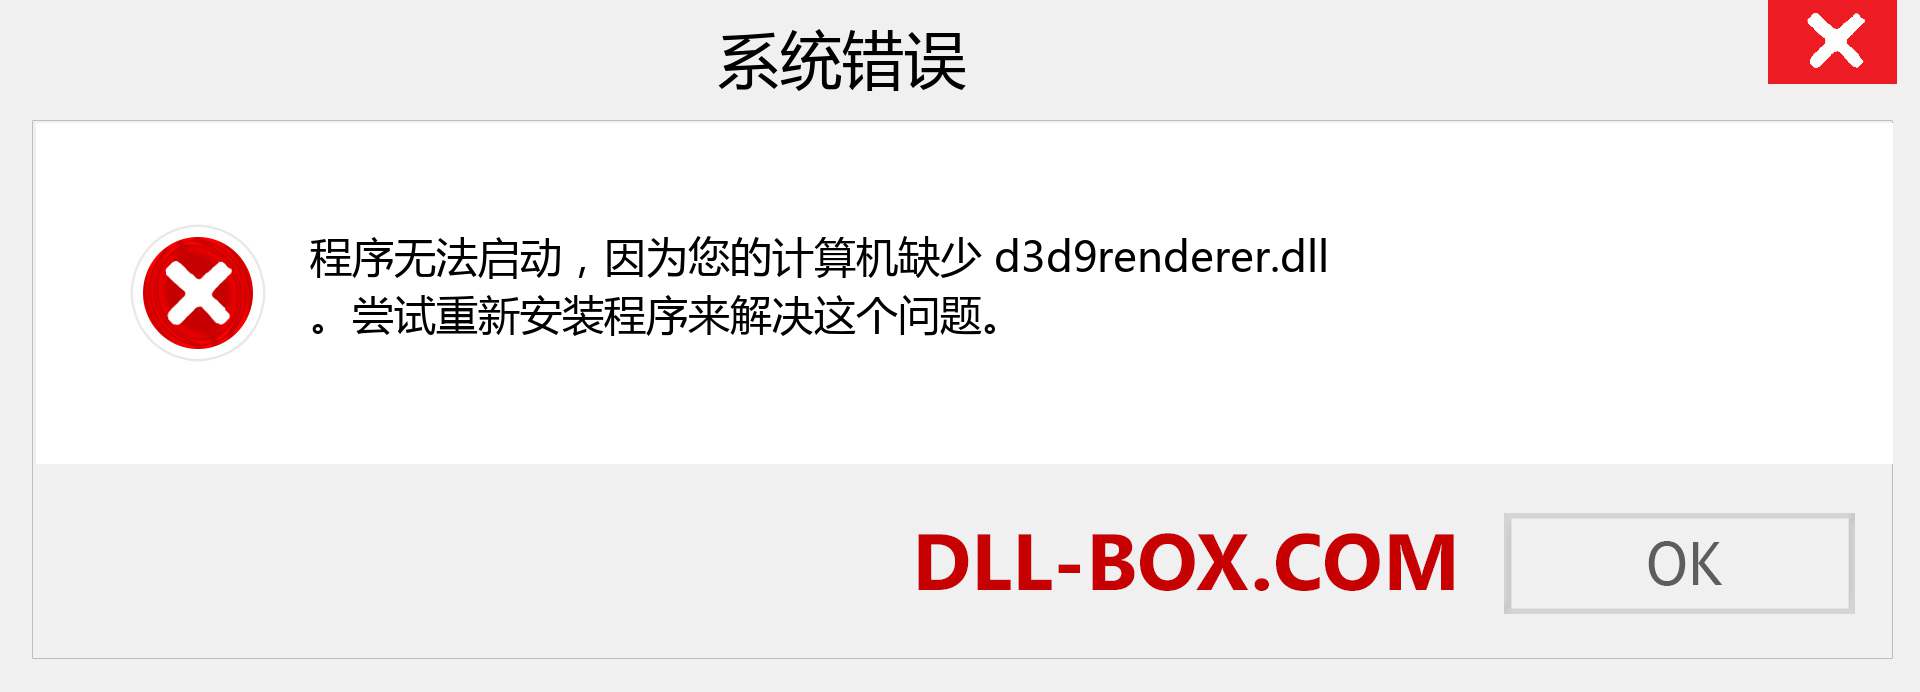 d3d9renderer.dll 文件丢失？。 适用于 Windows 7、8、10 的下载 - 修复 Windows、照片、图像上的 d3d9renderer dll 丢失错误